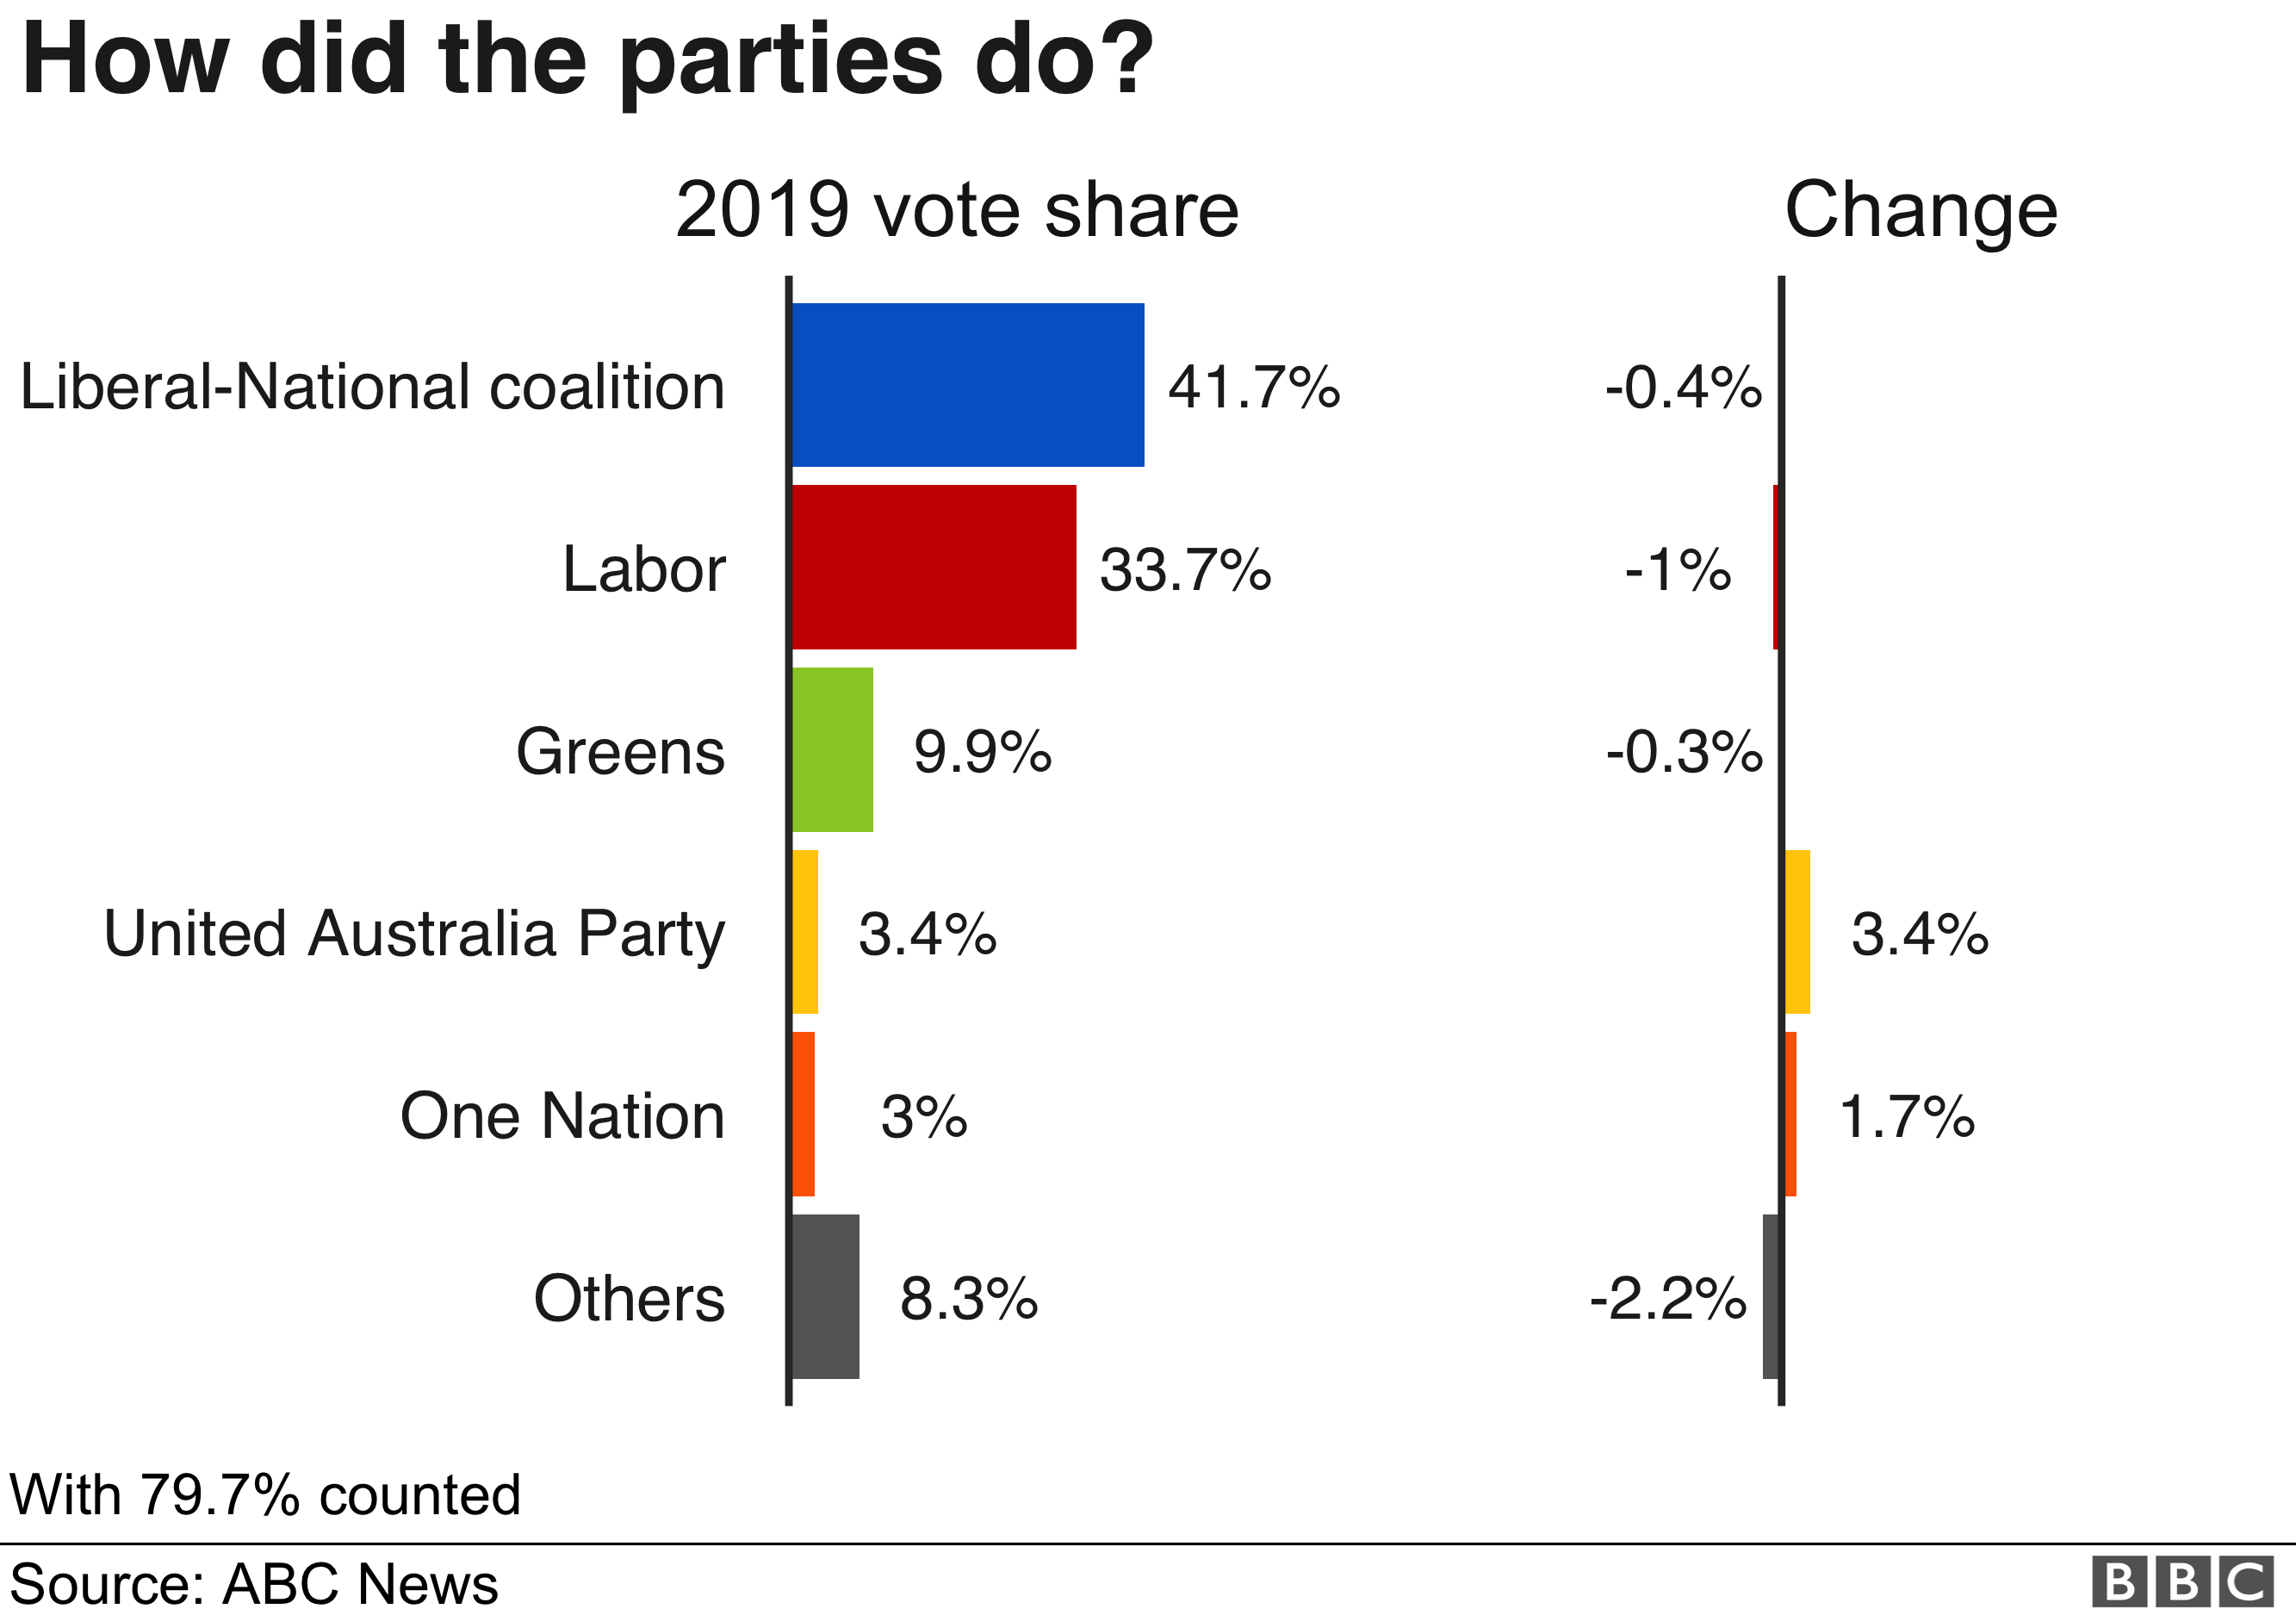 График: результаты выборов в Австралии, процентное соотношение голосов по партиям